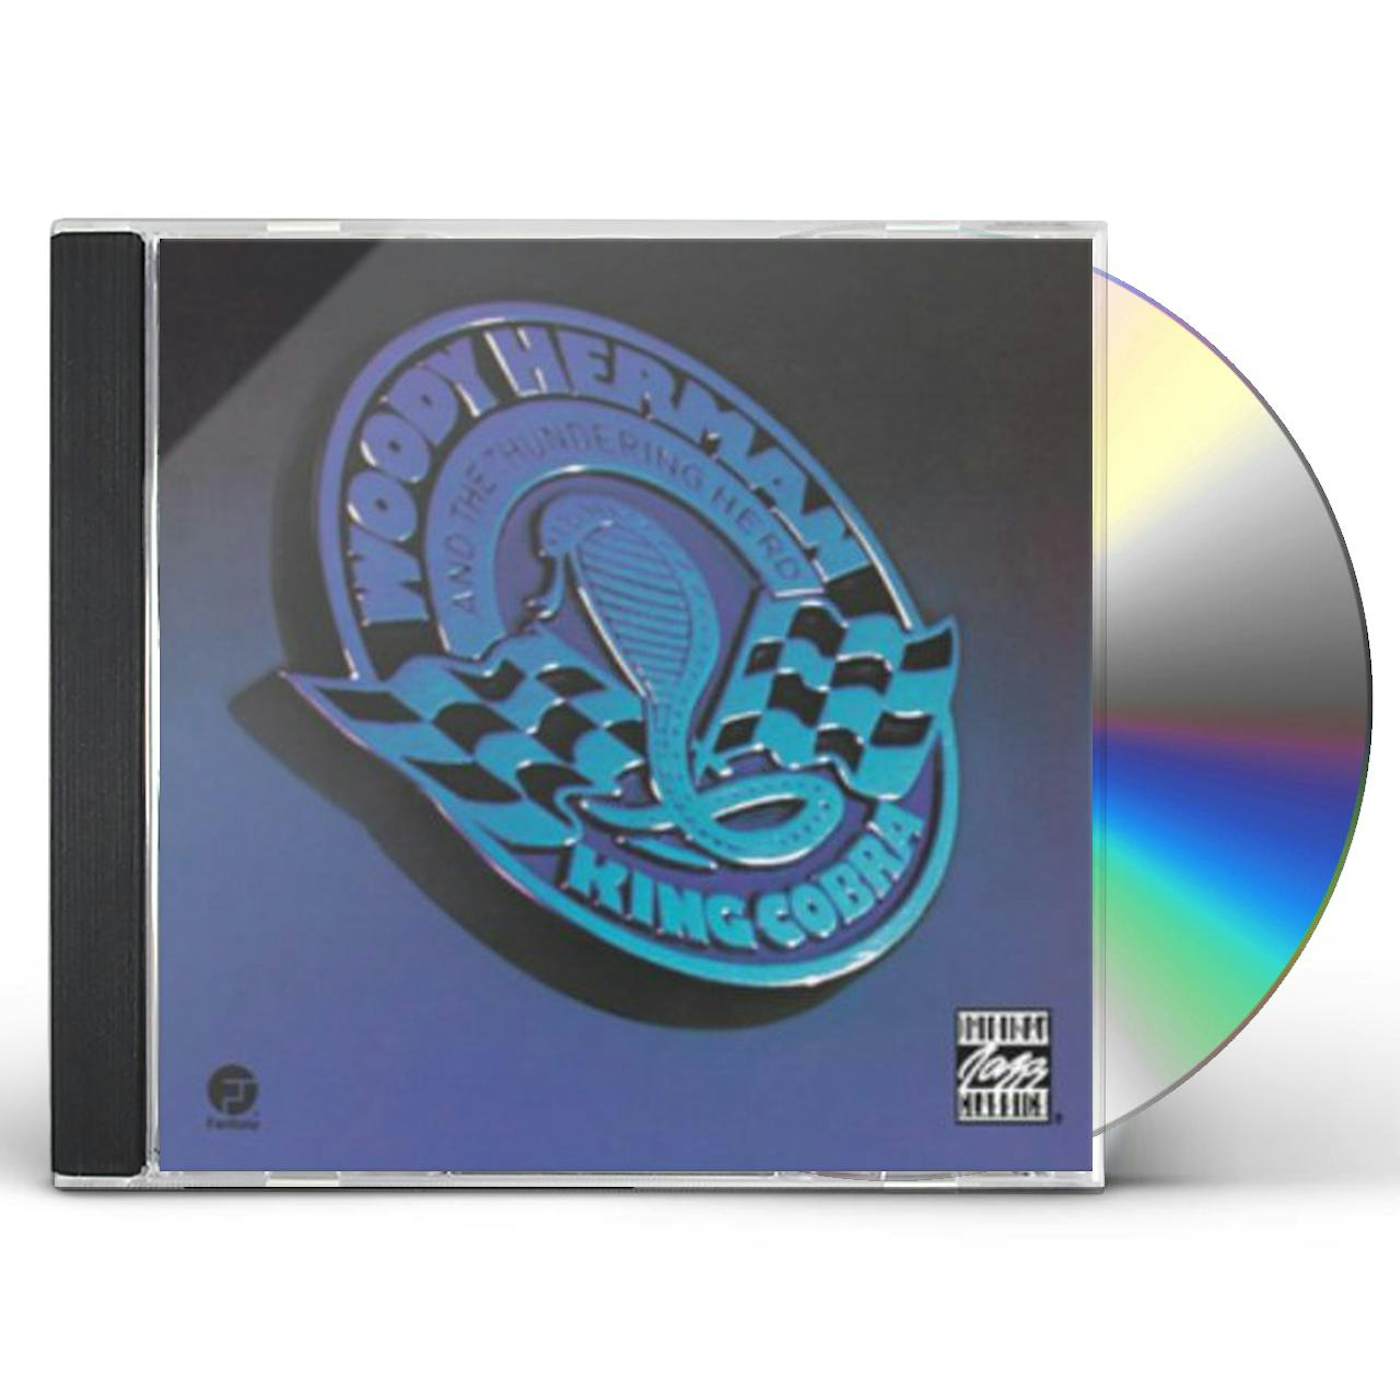 Woody Herman KING COBRA CD